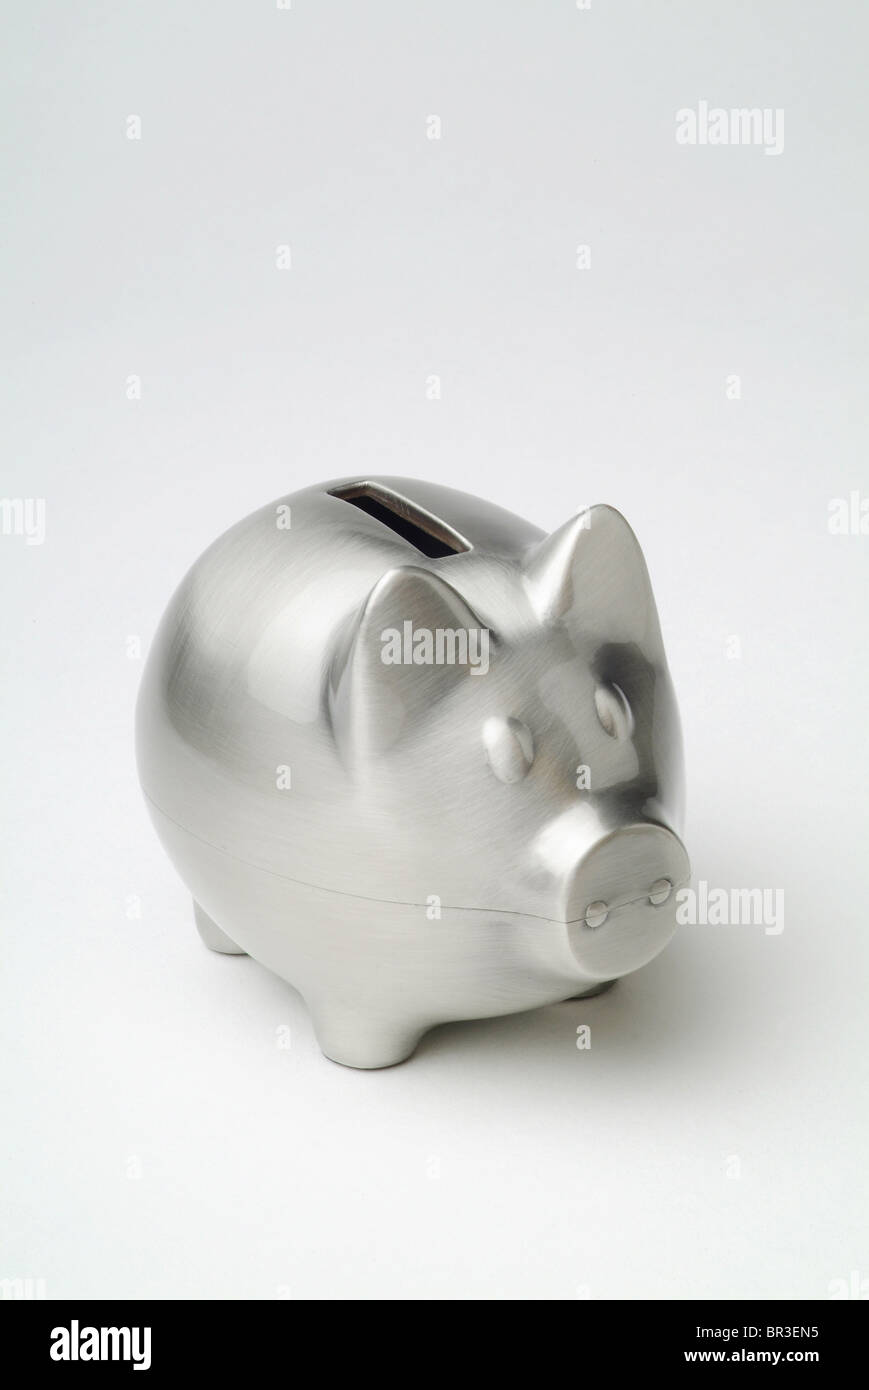 A silver piggy bank Stock Photo